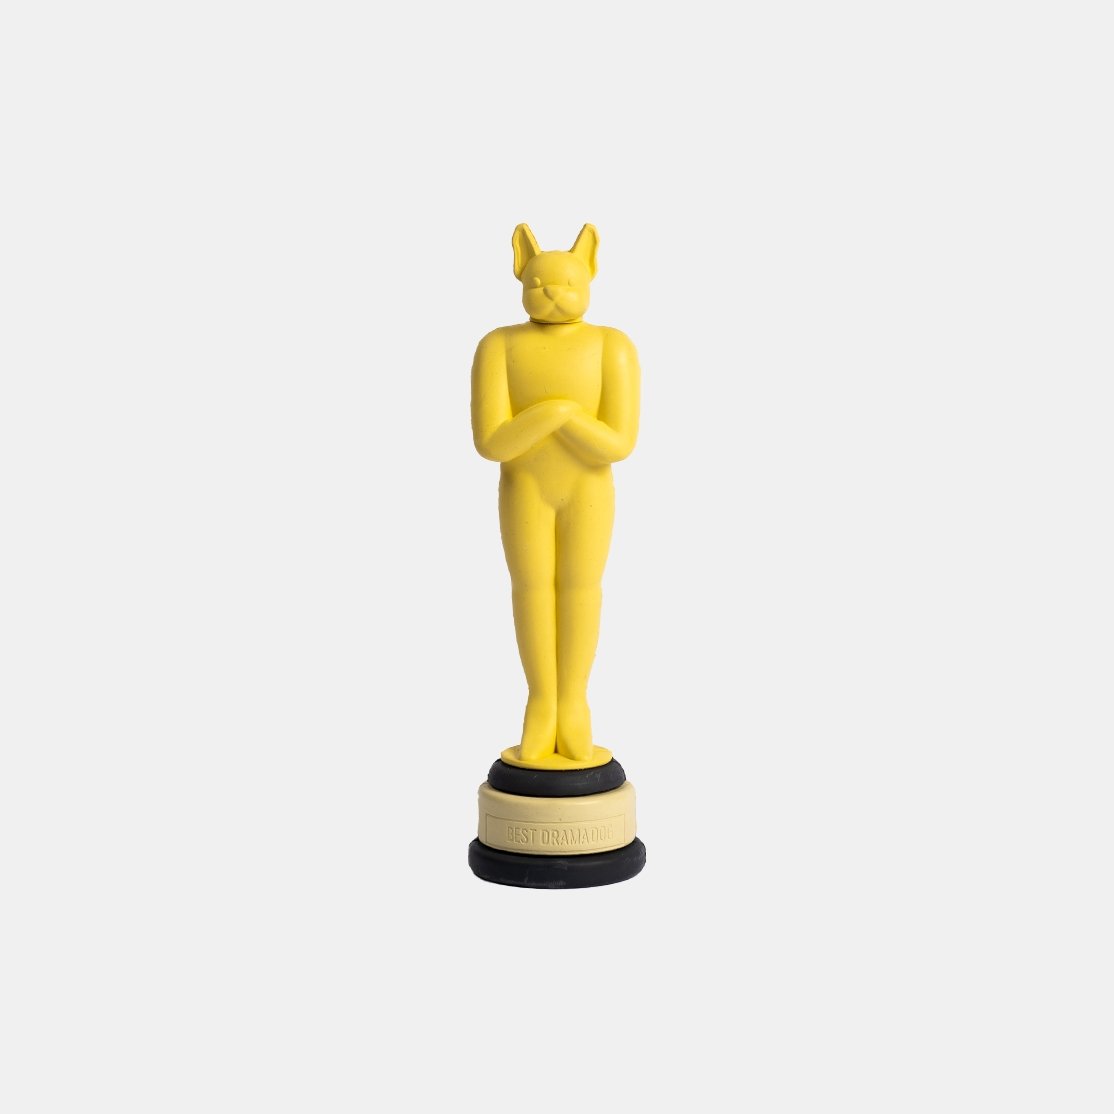 Academy Award Dog Toy - Silver Paw